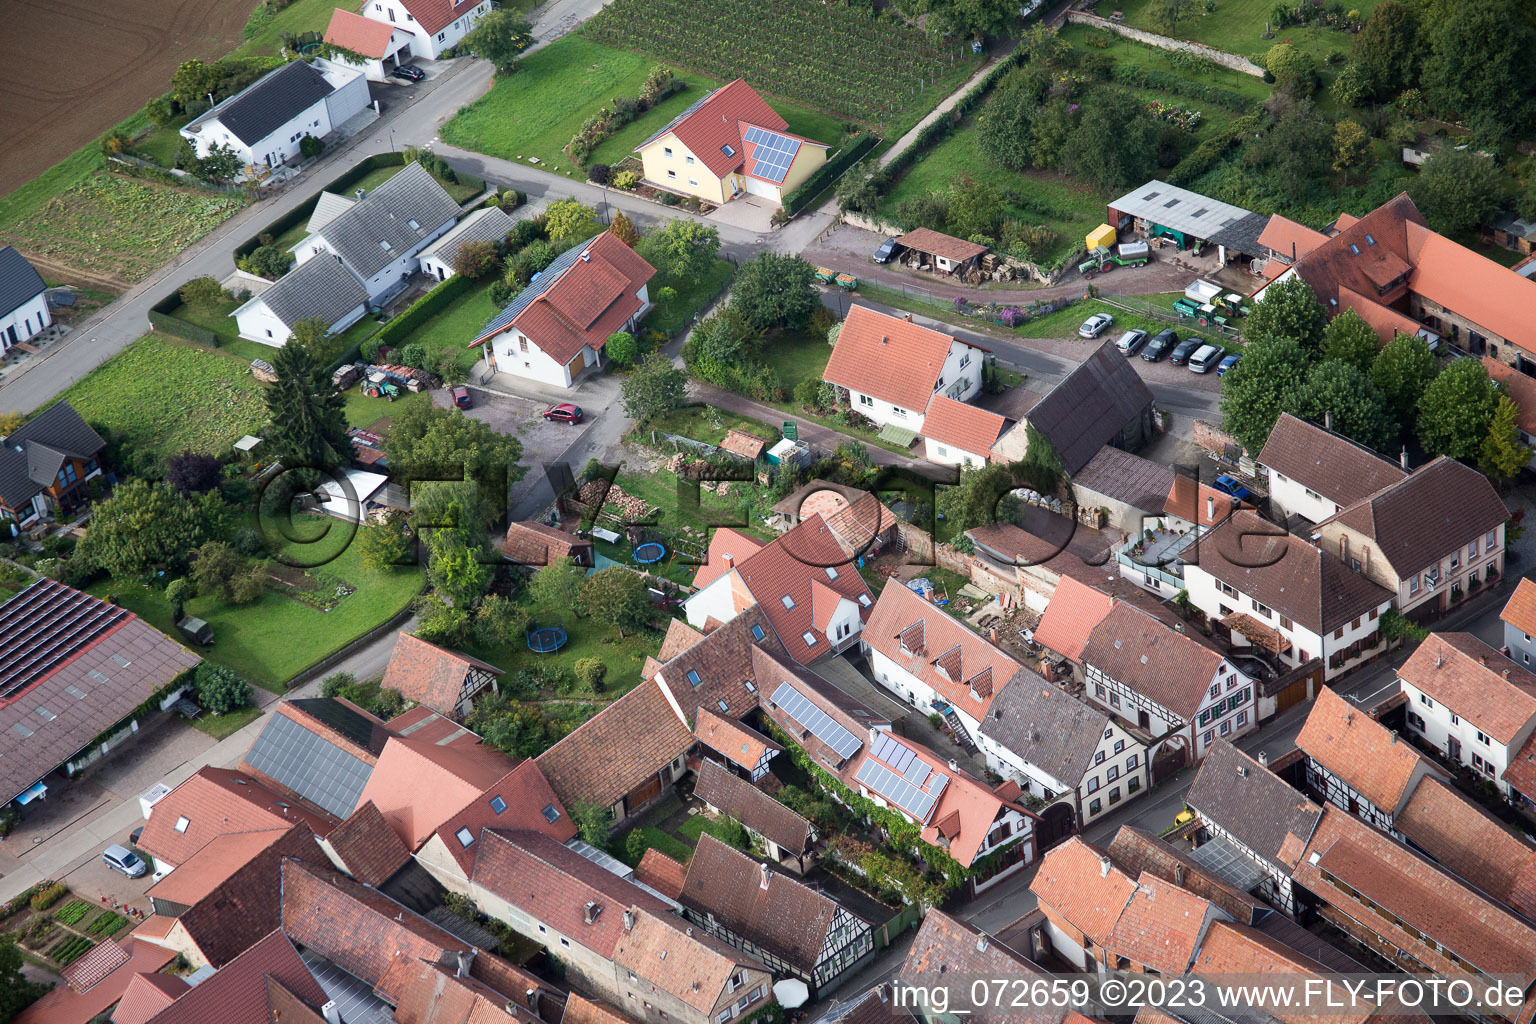 District Heuchelheim in Heuchelheim-Klingen in the state Rhineland-Palatinate, Germany seen from above